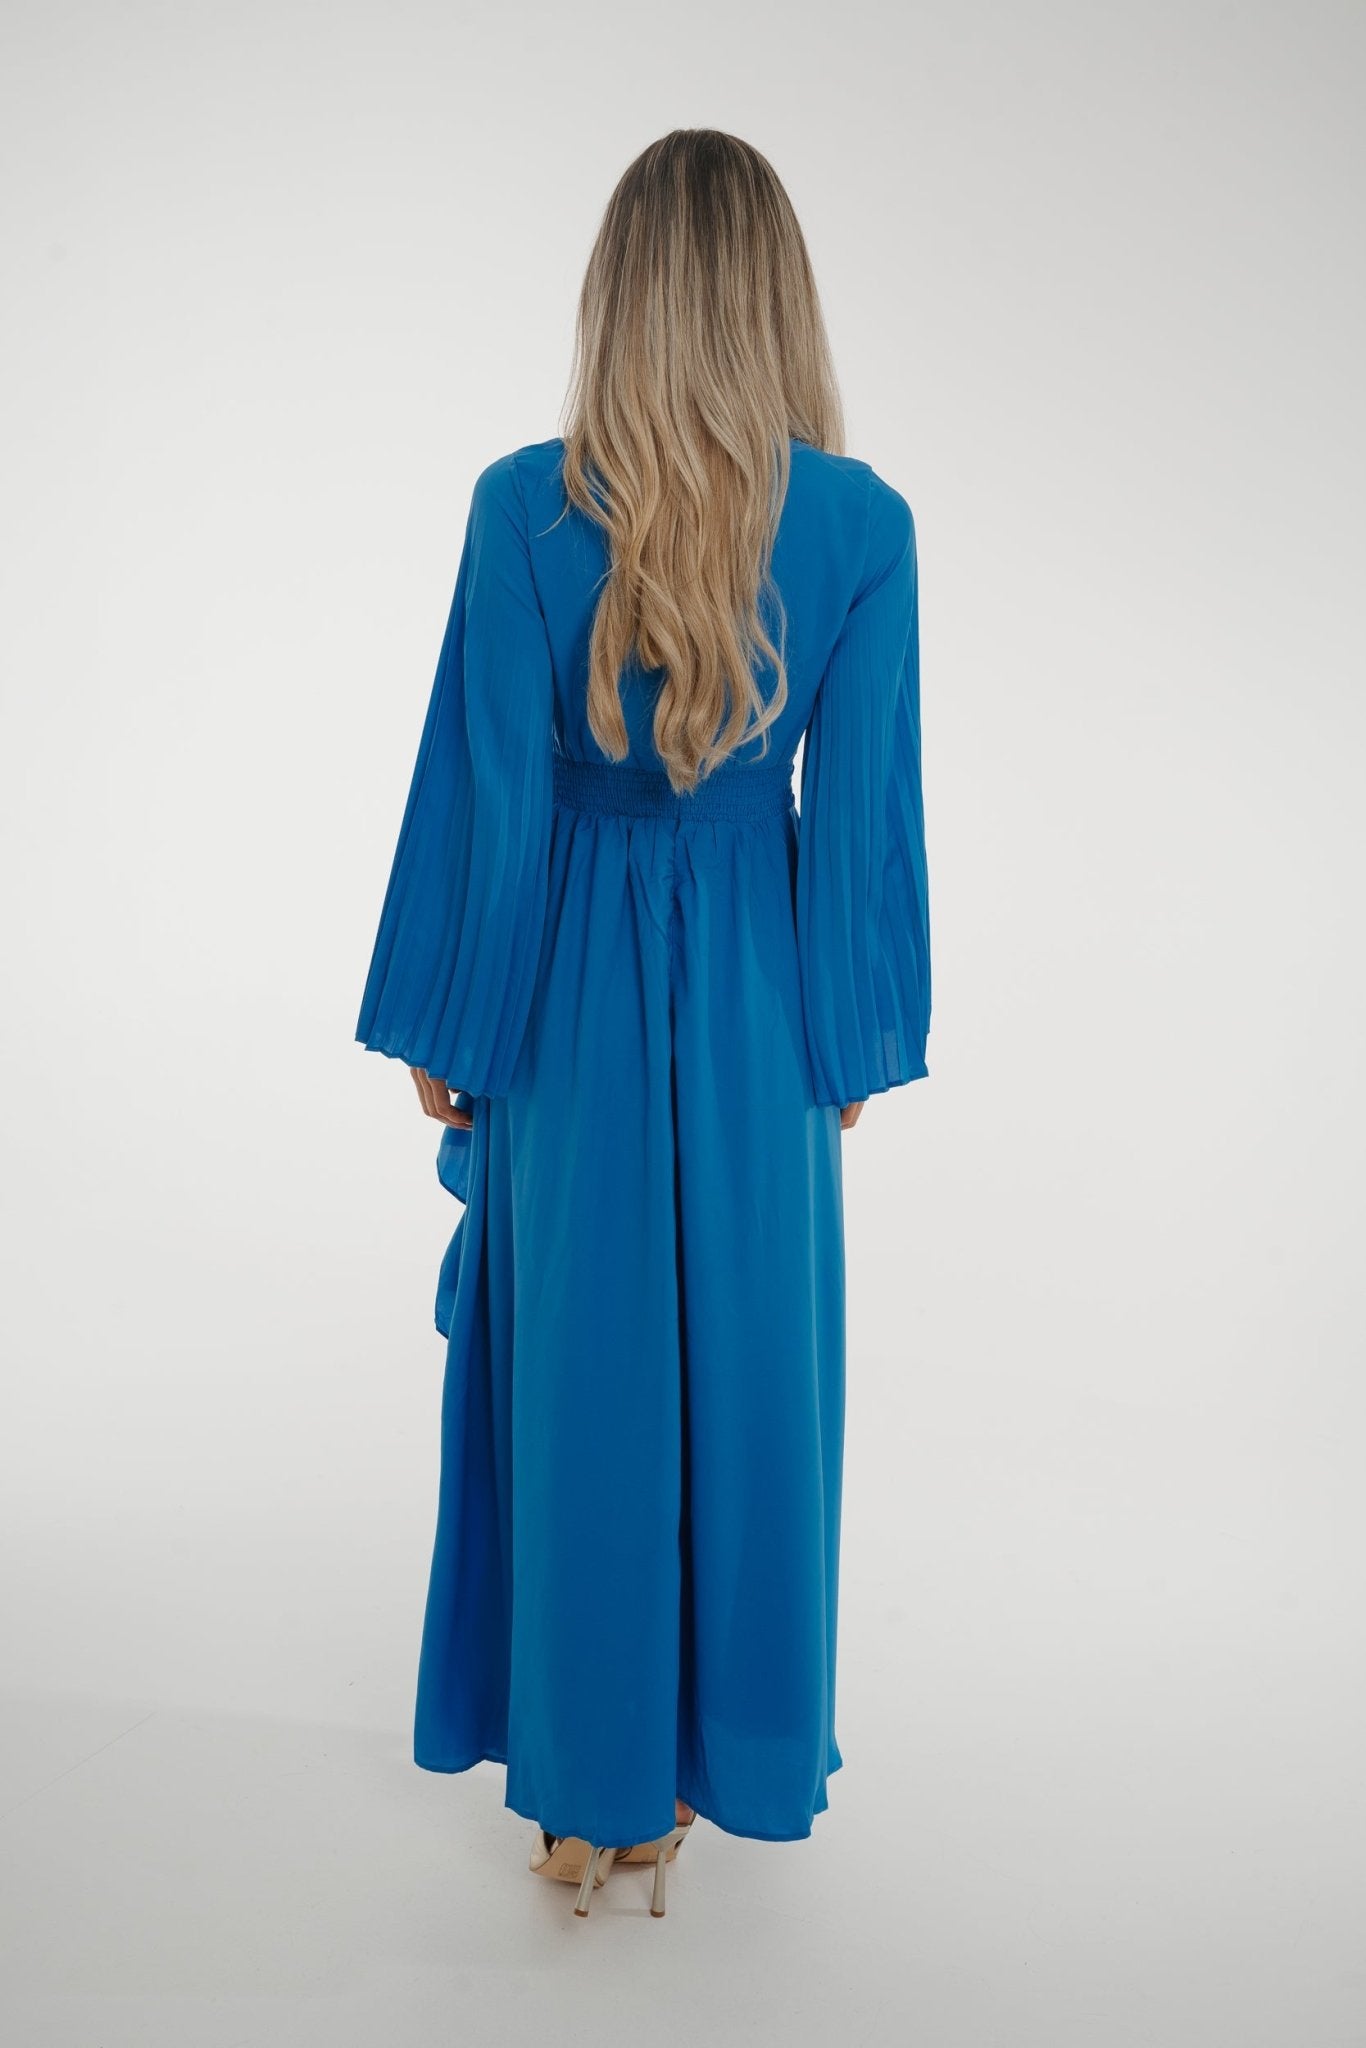 Taylor Belted Ruffle Dress In Blue - The Walk in Wardrobe